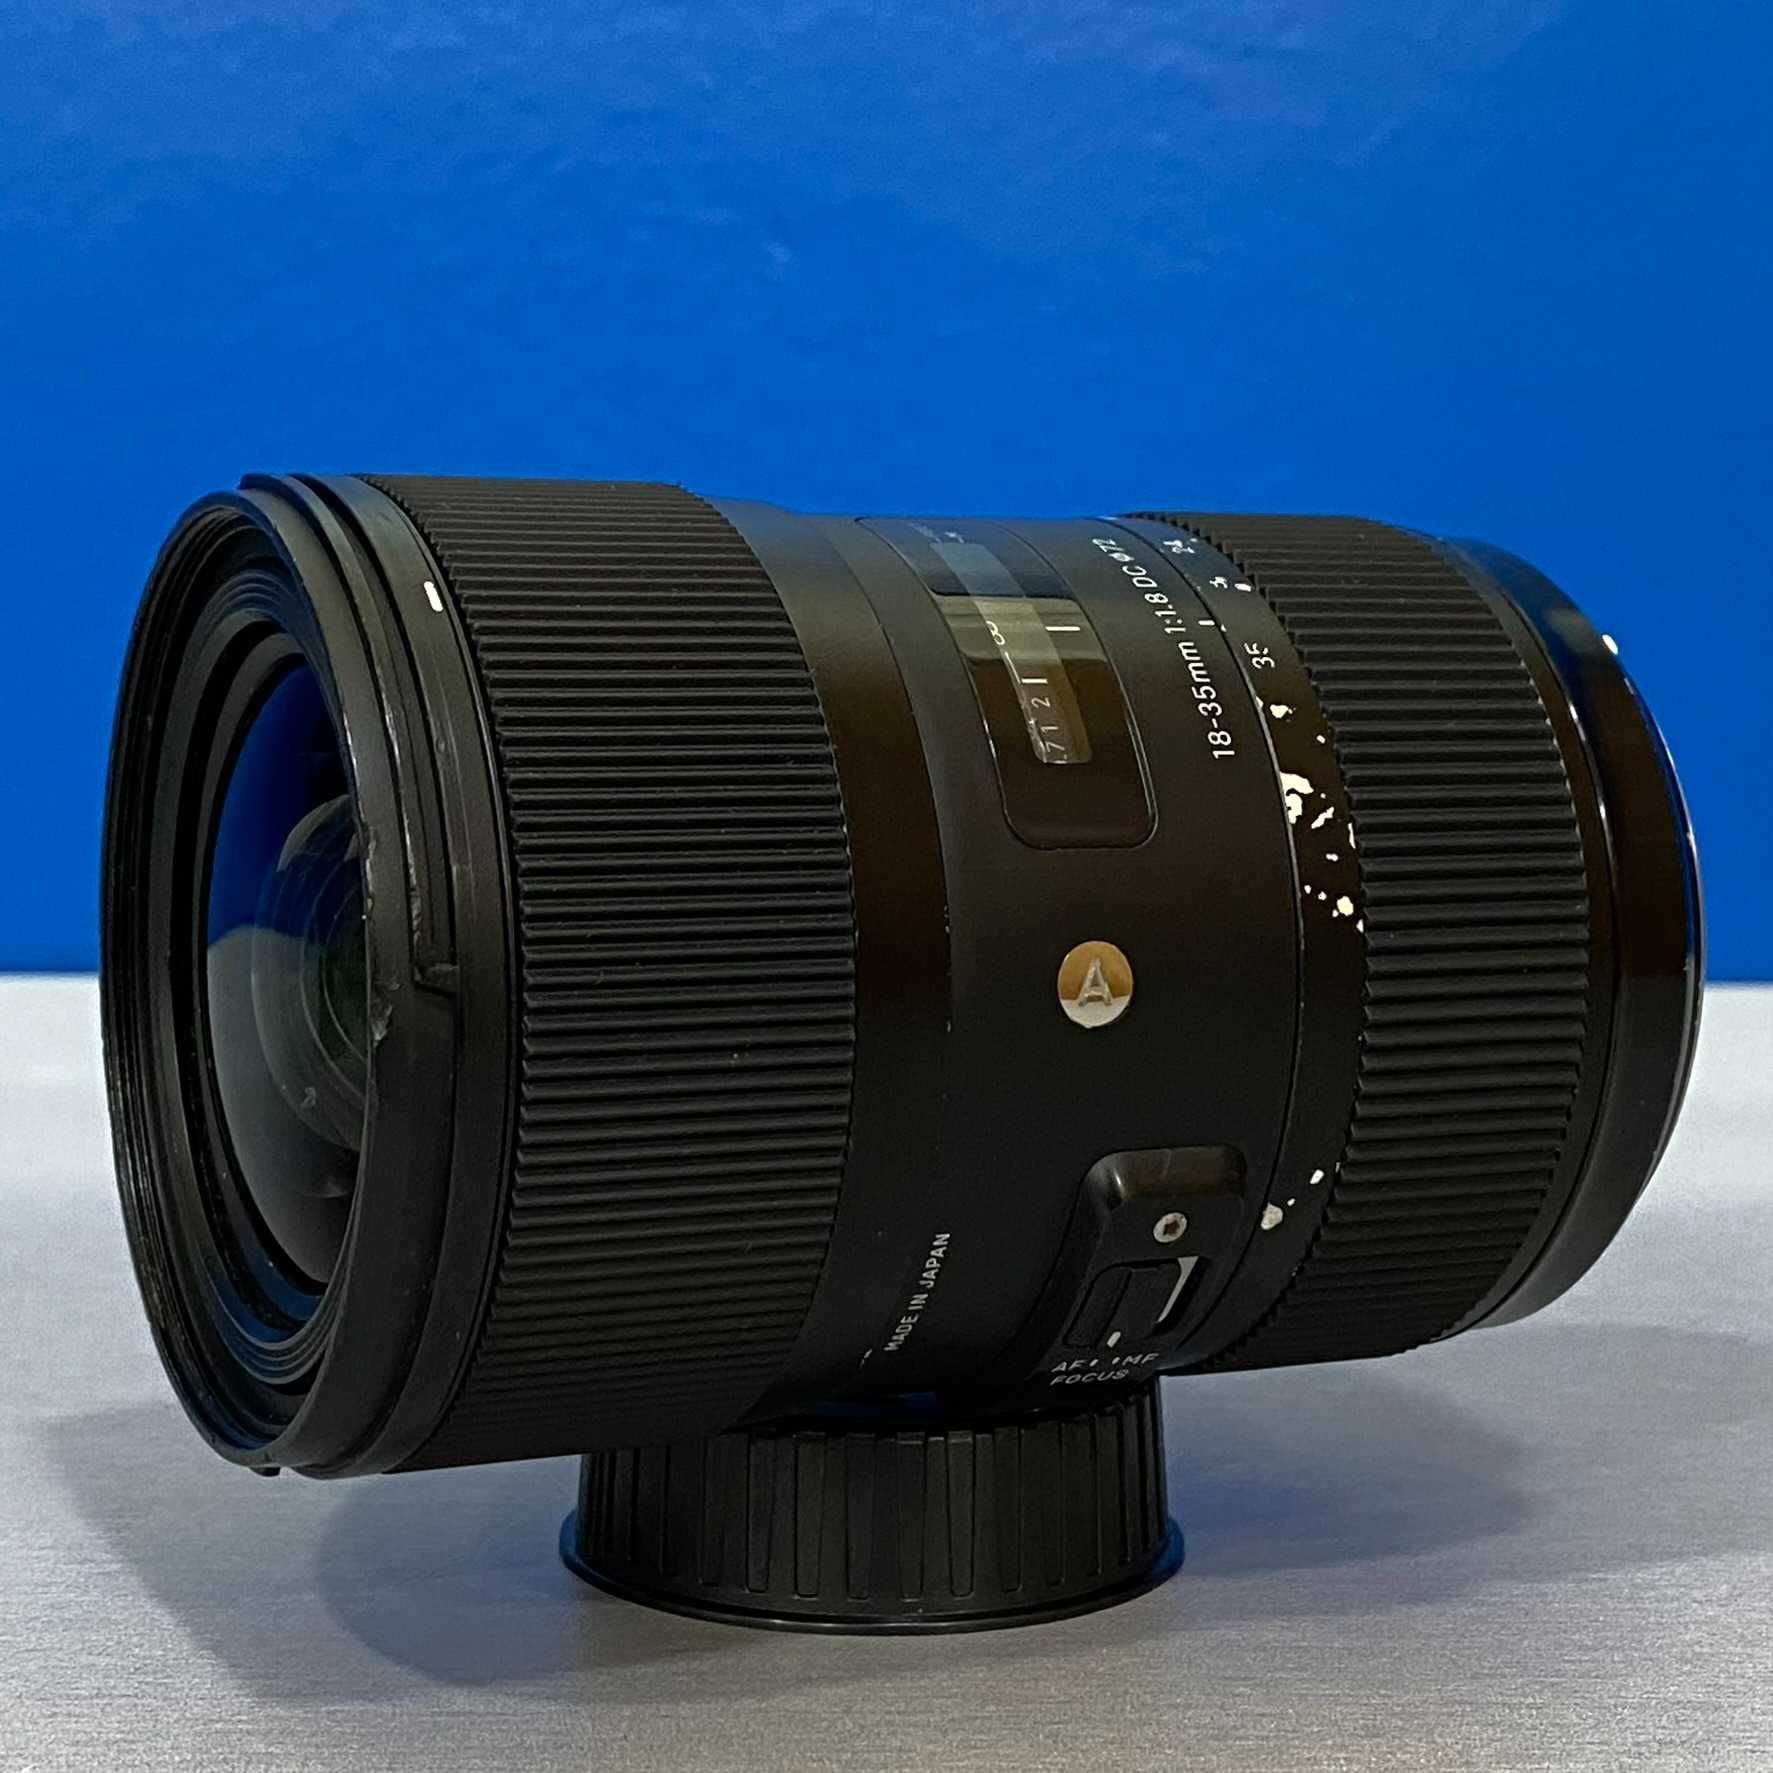 Sigma ART 18-35mm f/1.8 DC HSM (Nikon)